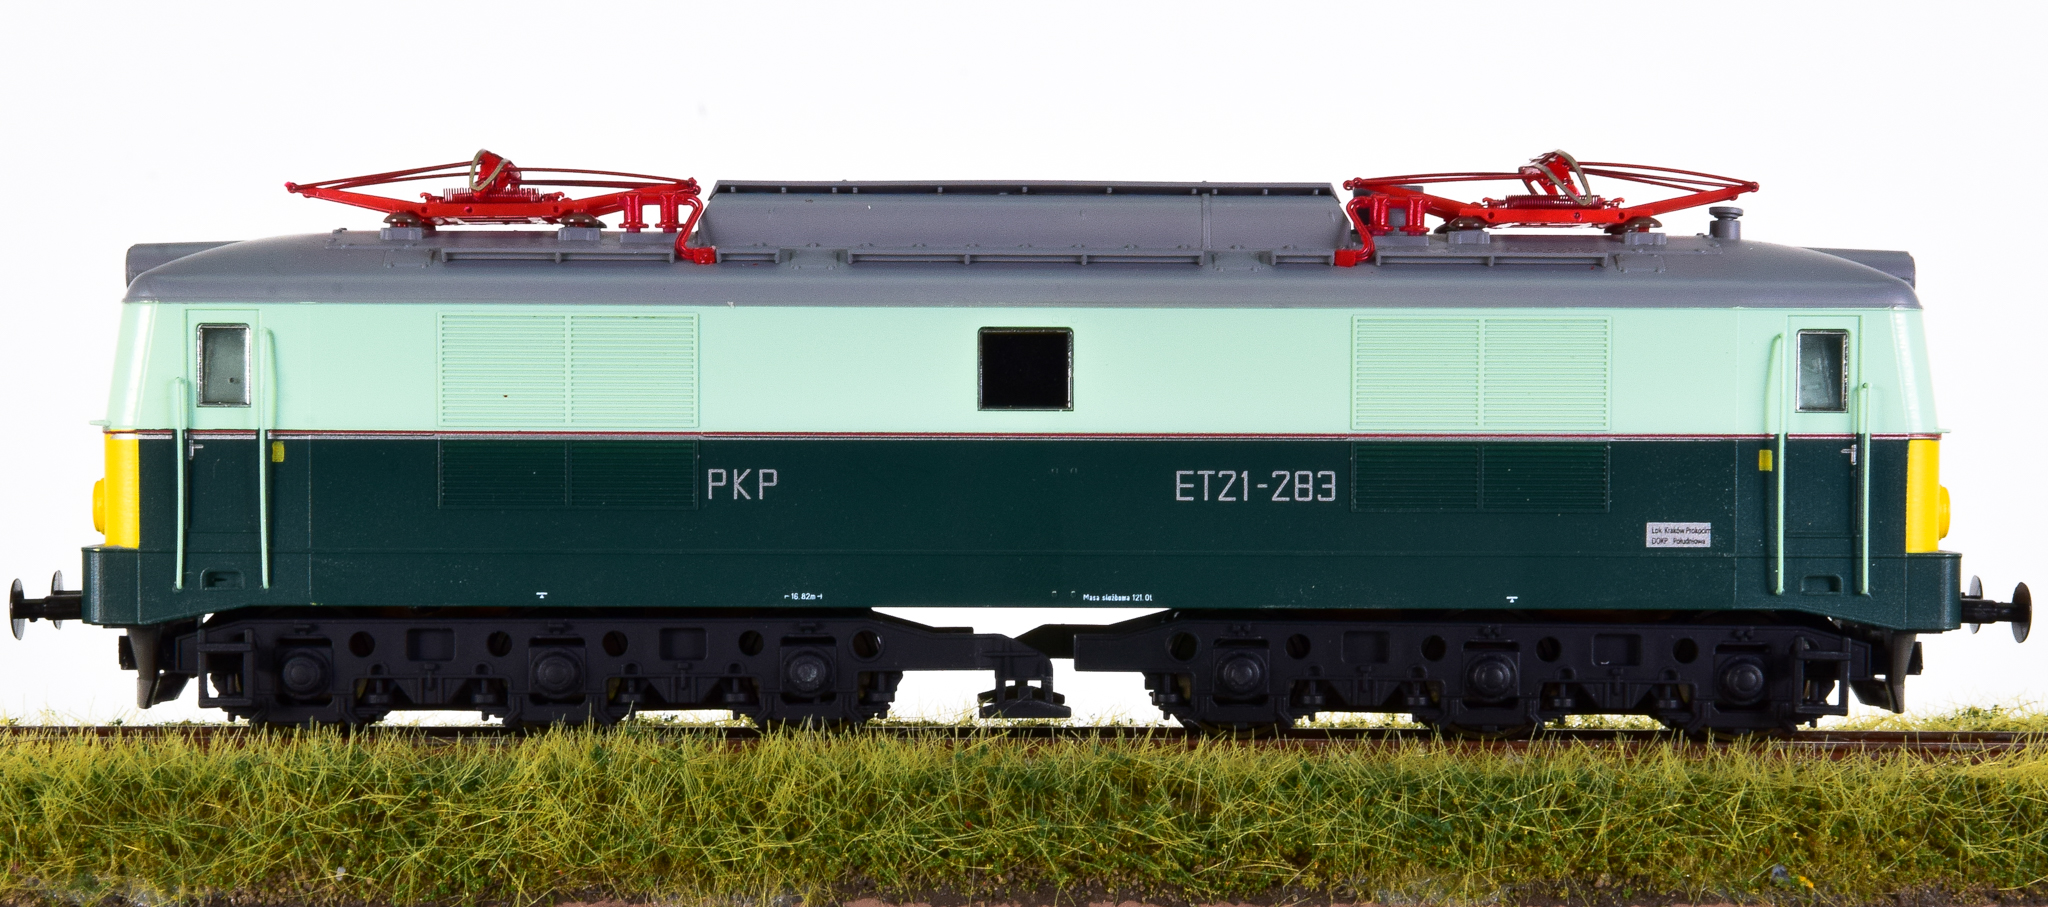 GebrauchteModellbahn | mtb PKPET21-283 (H0) – Elektrolokomotive Typ ET21  der PKP | Erste Klasse aus 2. Hand